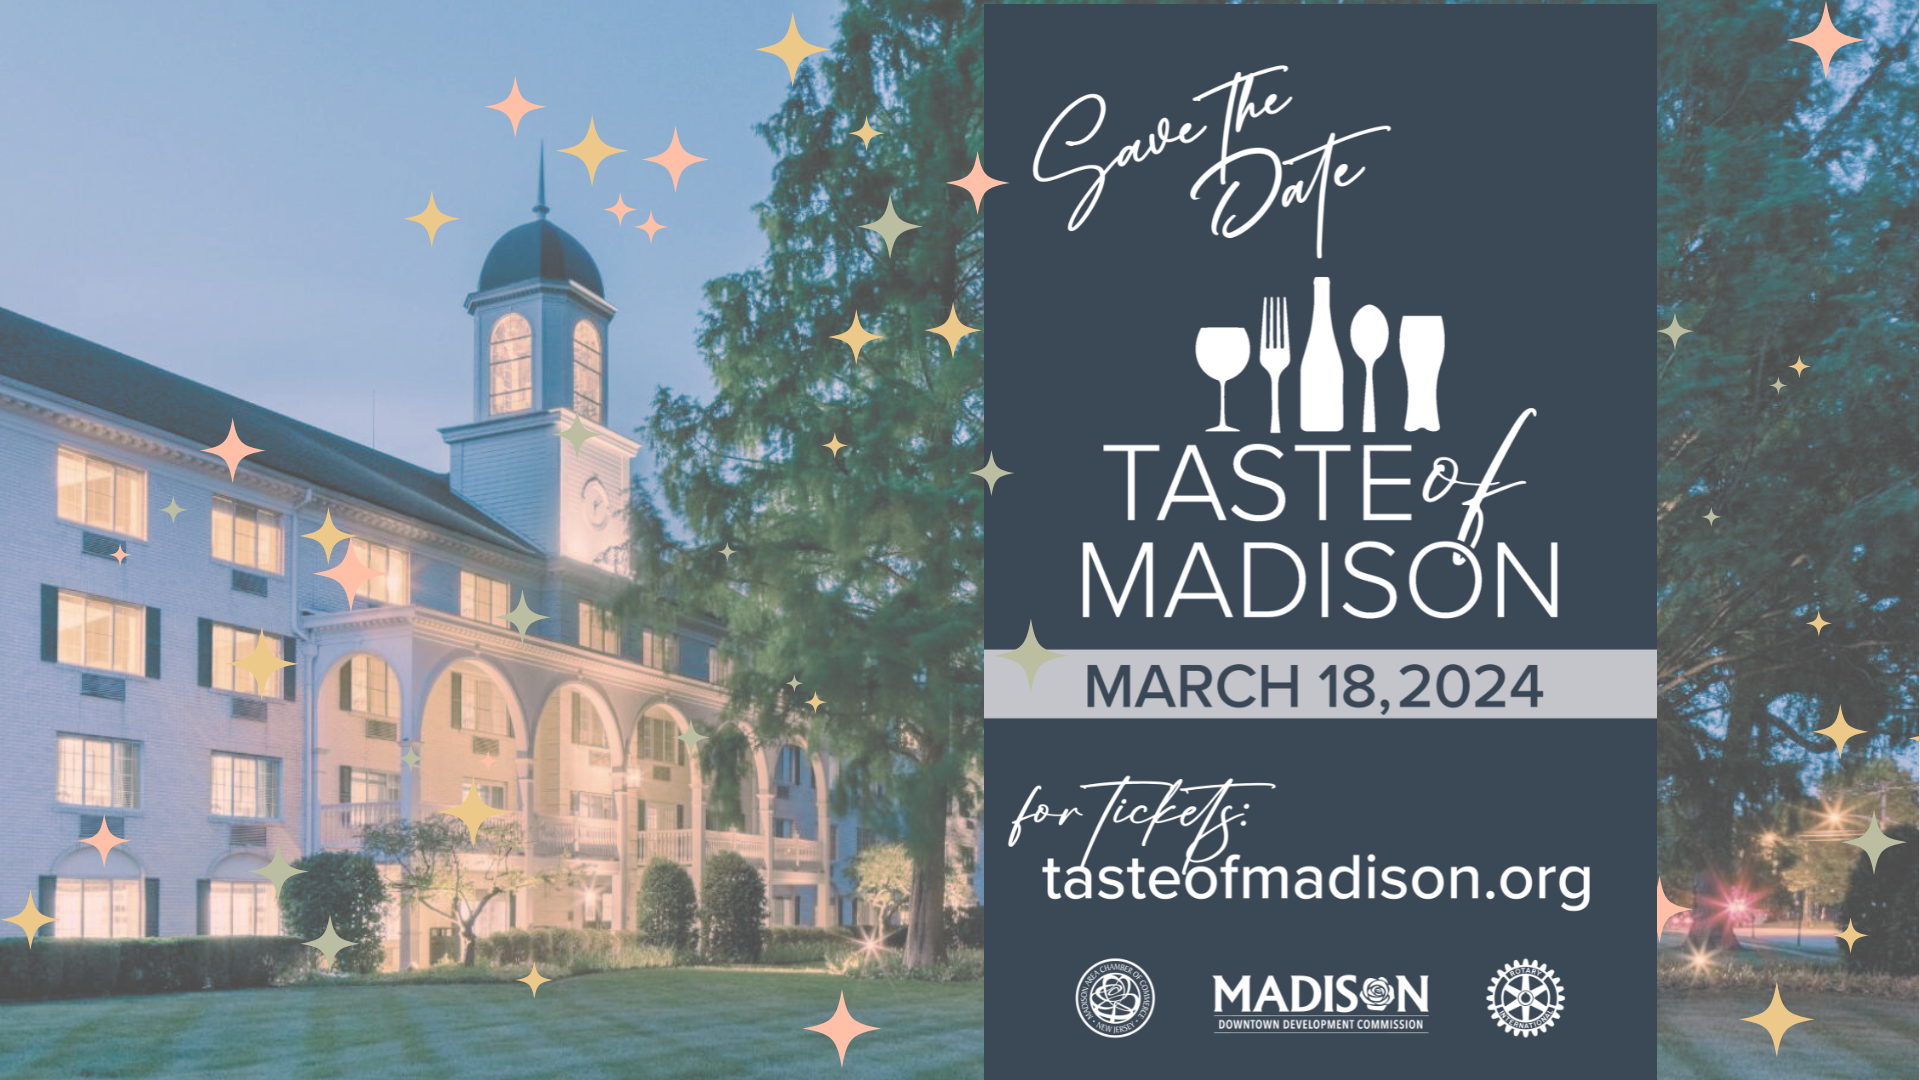 The Taste of Madison